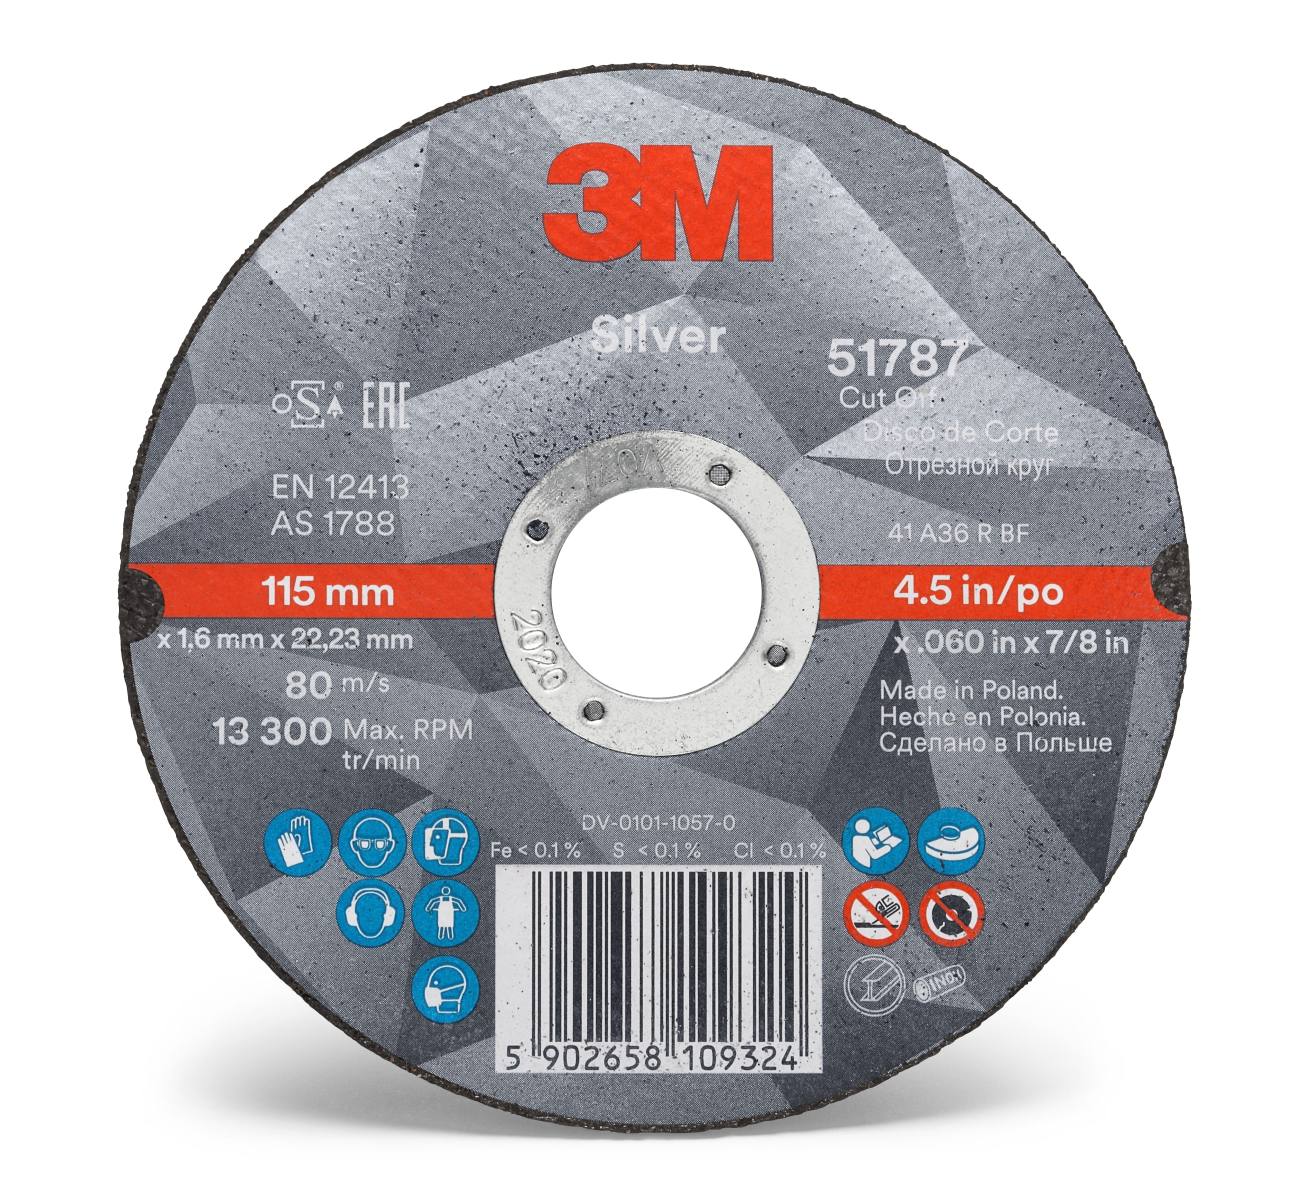 3M Silver Cut-Off Wheel cutting-off wheel, 125 mm, 1.6 mm, 22.23 mm, T41, 51792